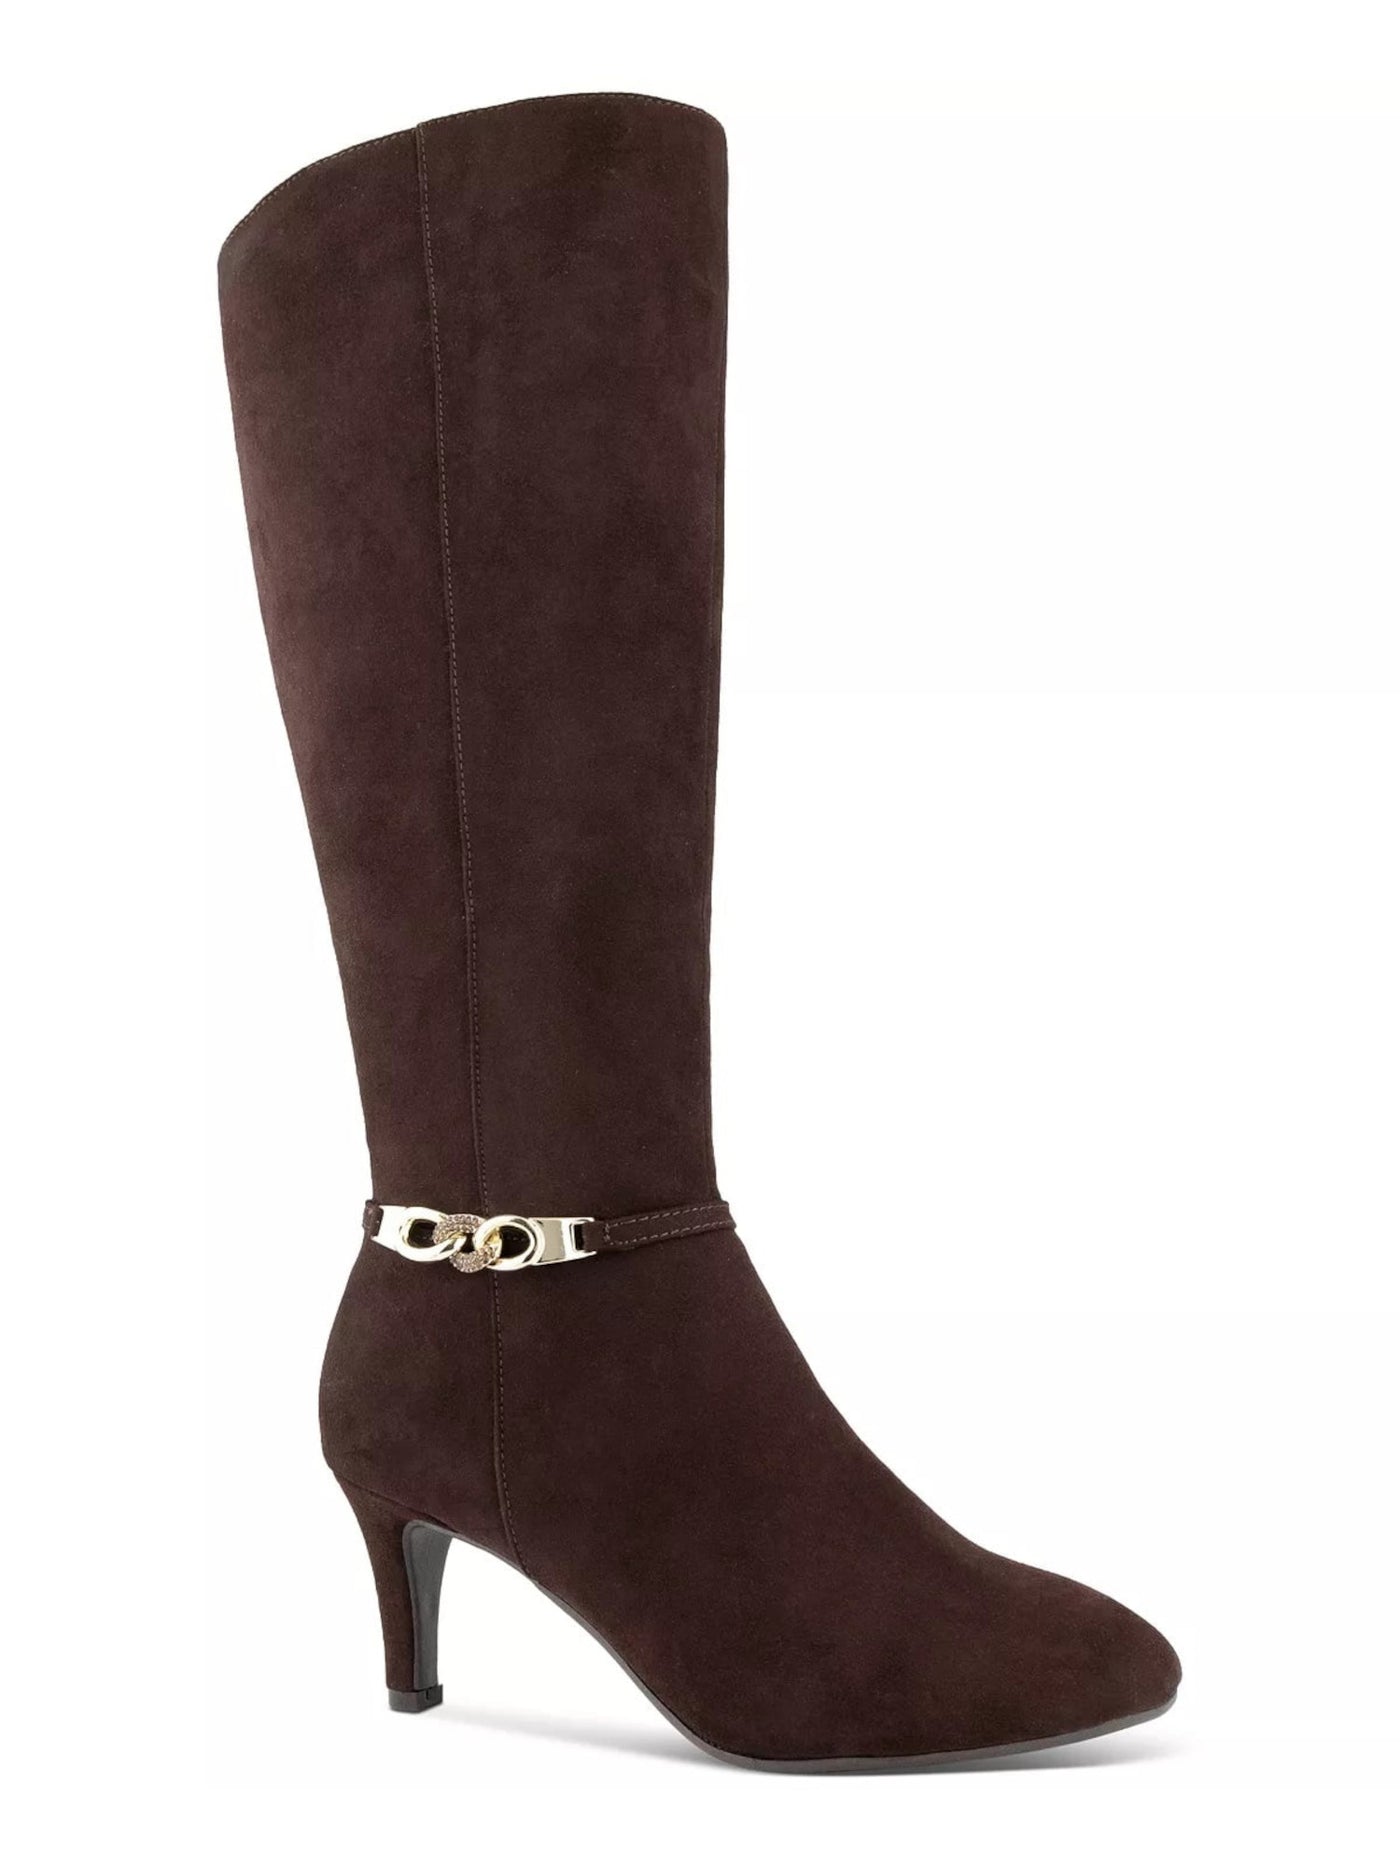 KAREN SCOTT Womens Choco Brown Wide Calf Padded Hanna Almond Toe Sculpted Heel Zip-Up Dress Boots 6.5 M WC